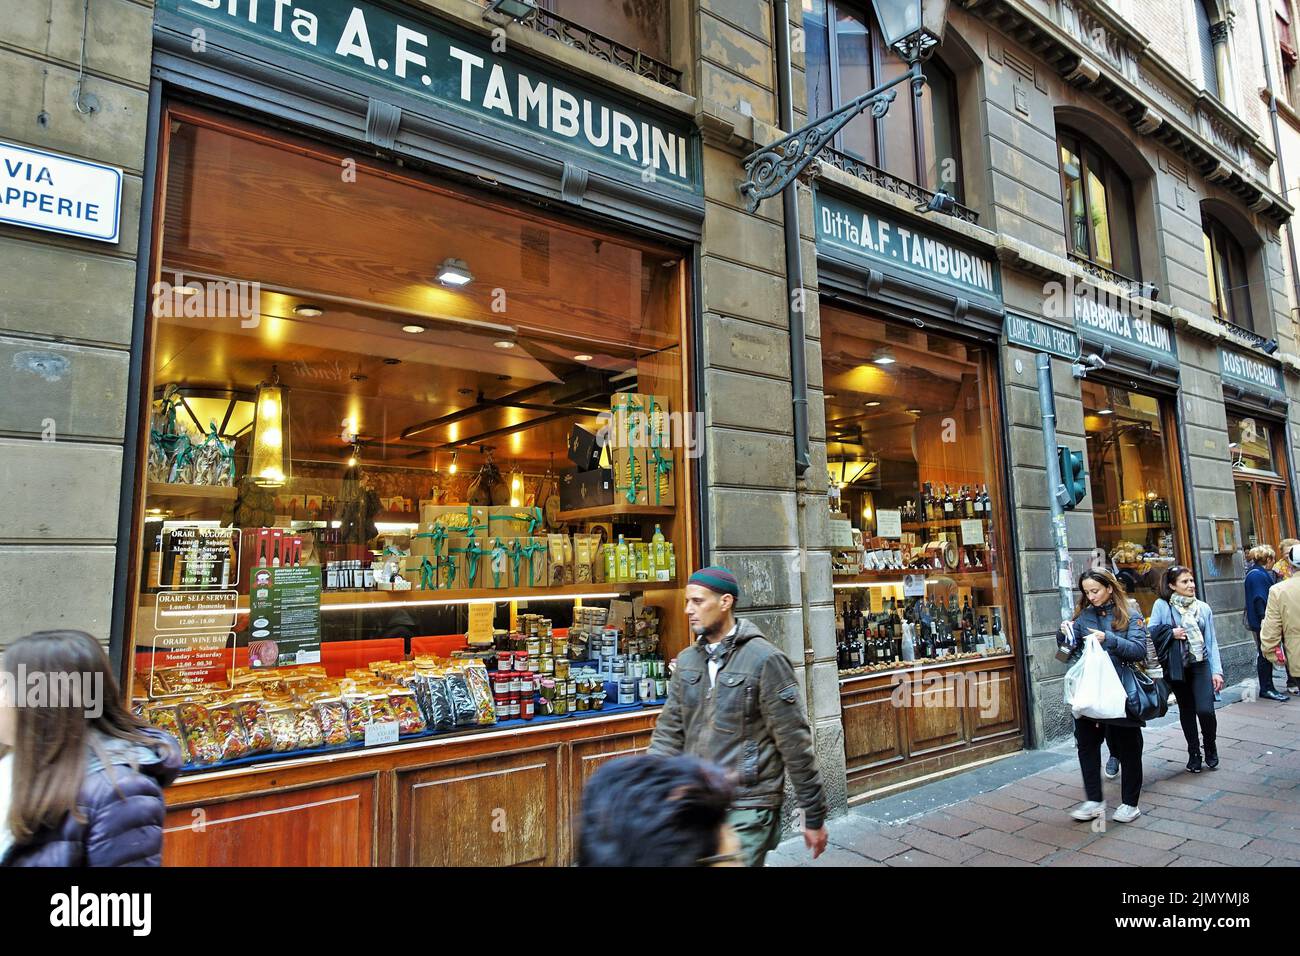 Tamburini food shop windows, Bologna, Emilia Romagna, Italy, Europe Stock Photo